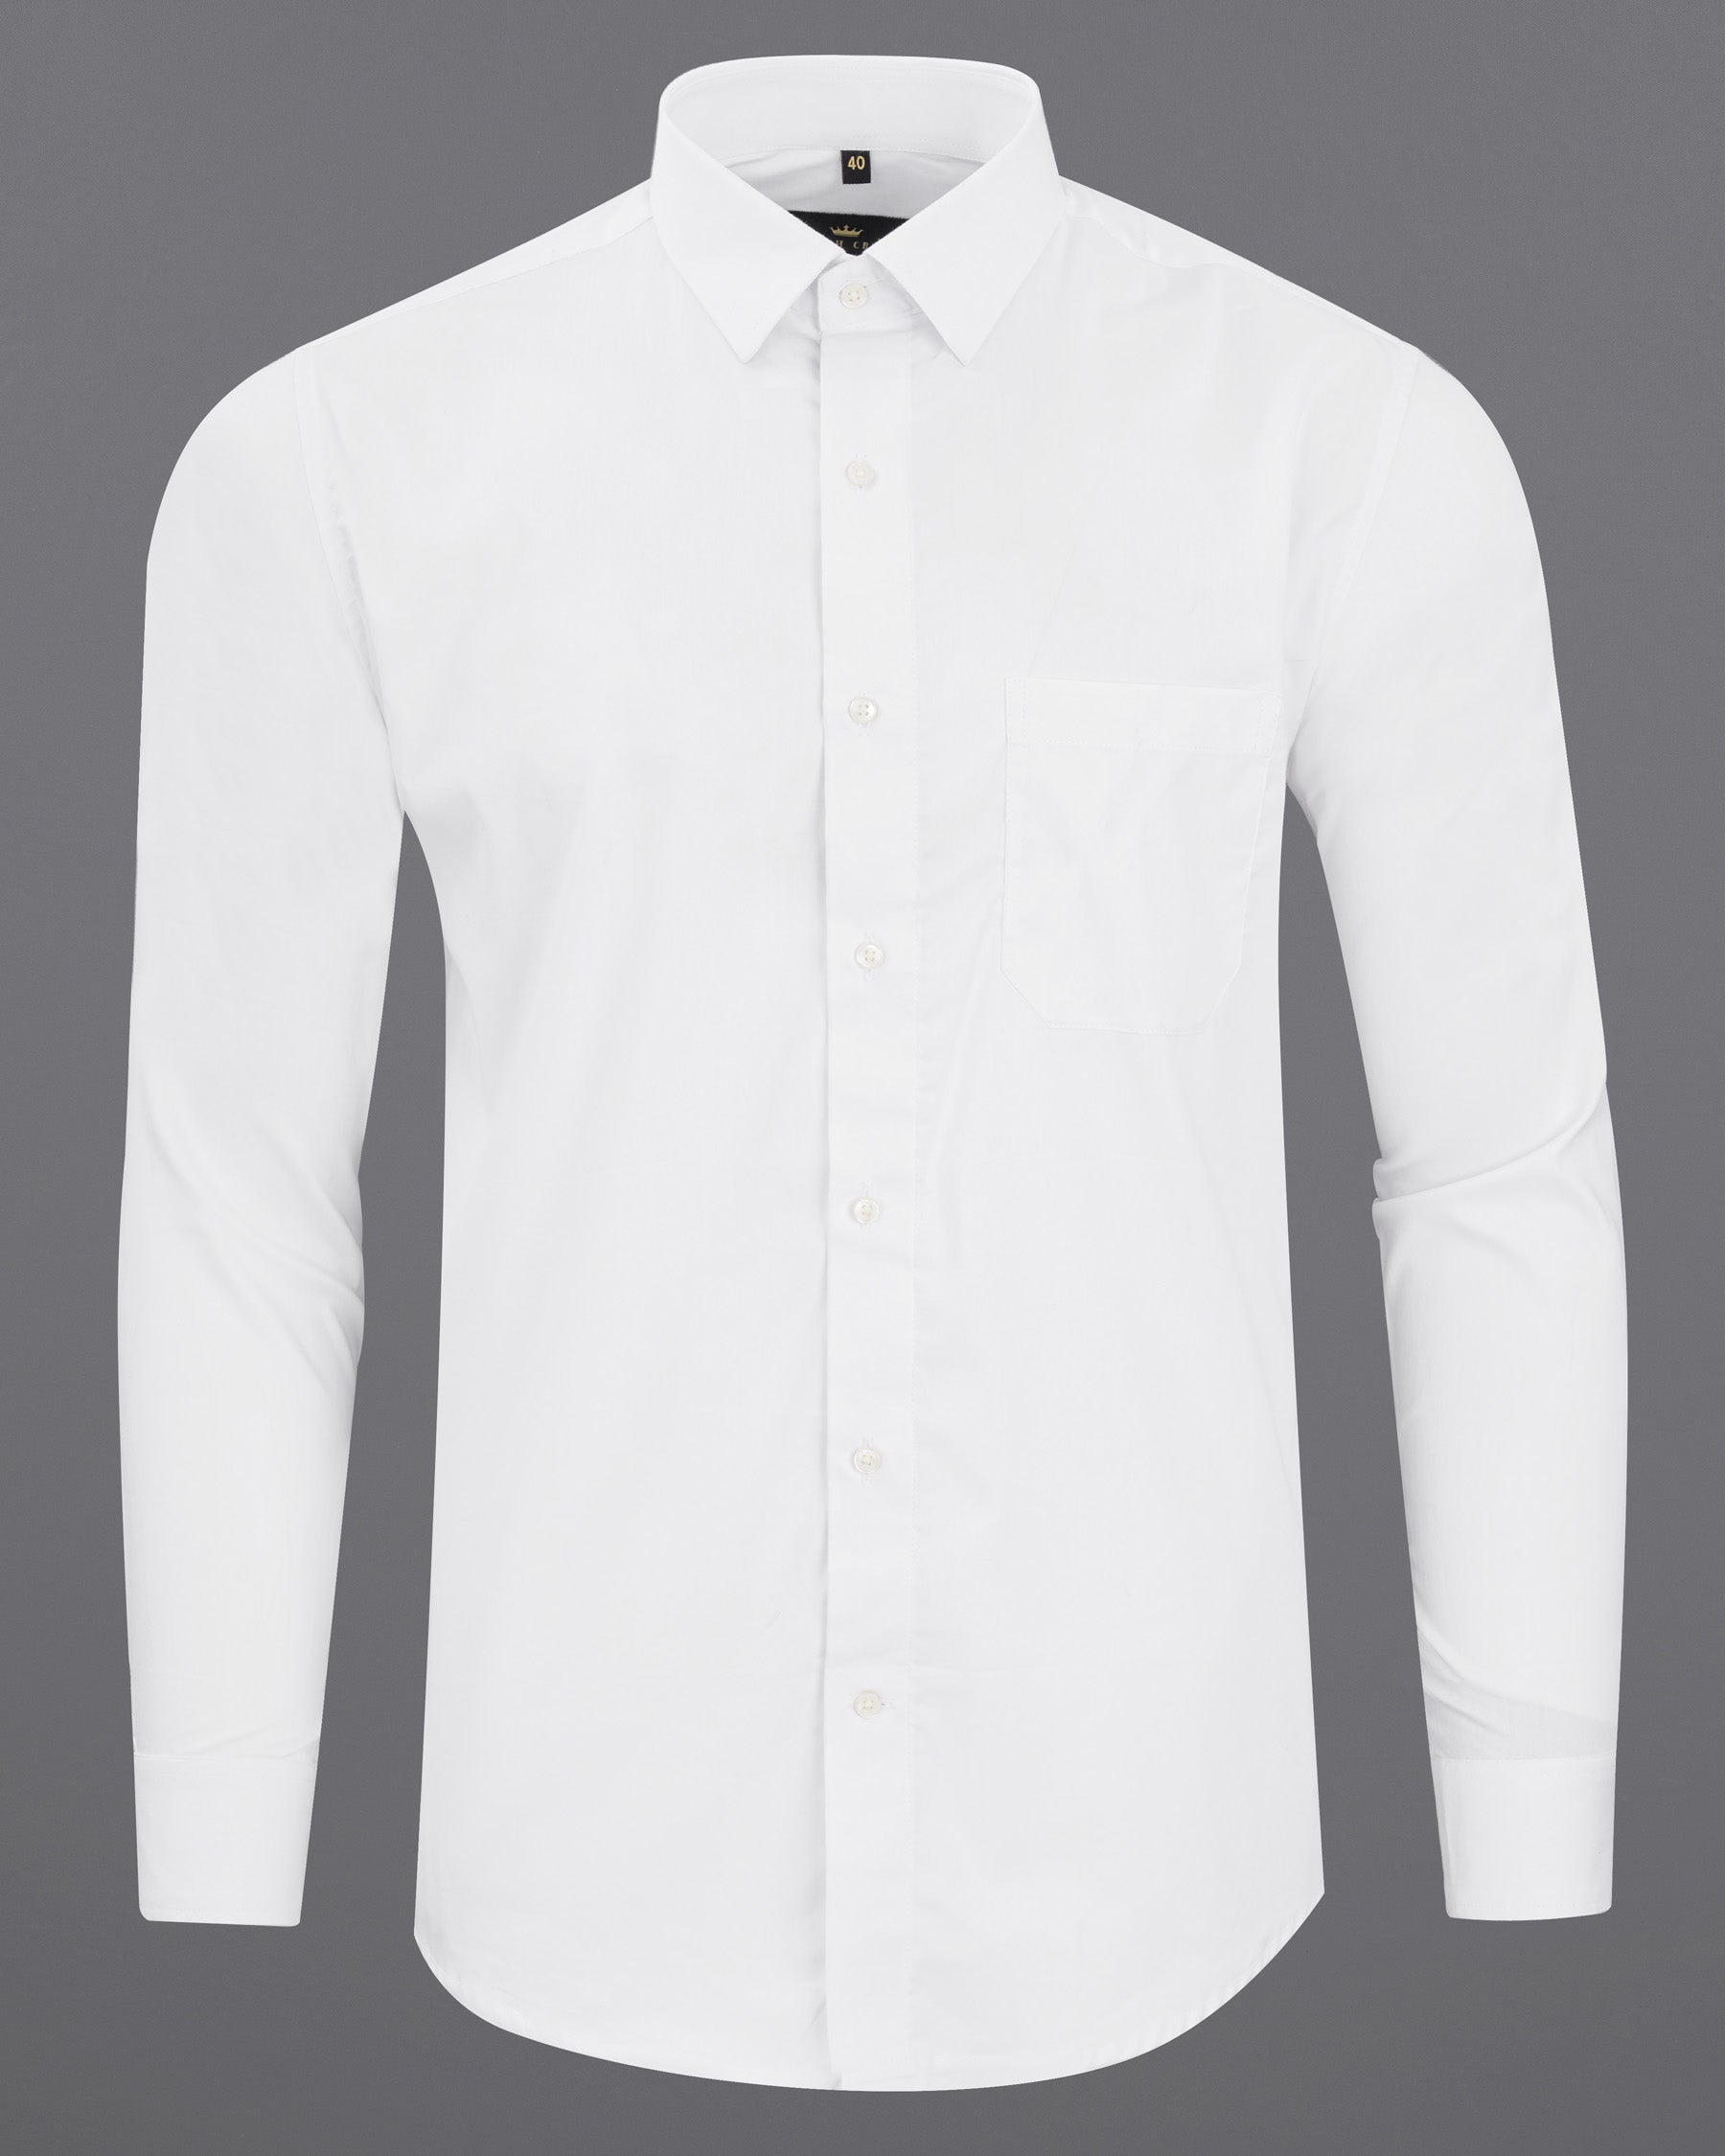 Bright White Super Soft Premium Cotton Shirt 7681-38, 7681-H-38, 7681-39,7681-H-39, 7681-40, 7681-H-40, 7681-42, 7681-H-42, 7681-44, 7681-H-44, 7681-46, 7681-H-46, 7681-48, 7681-H-48, 7681-50, 7681-H-50, 7681-52, 7681-H-52